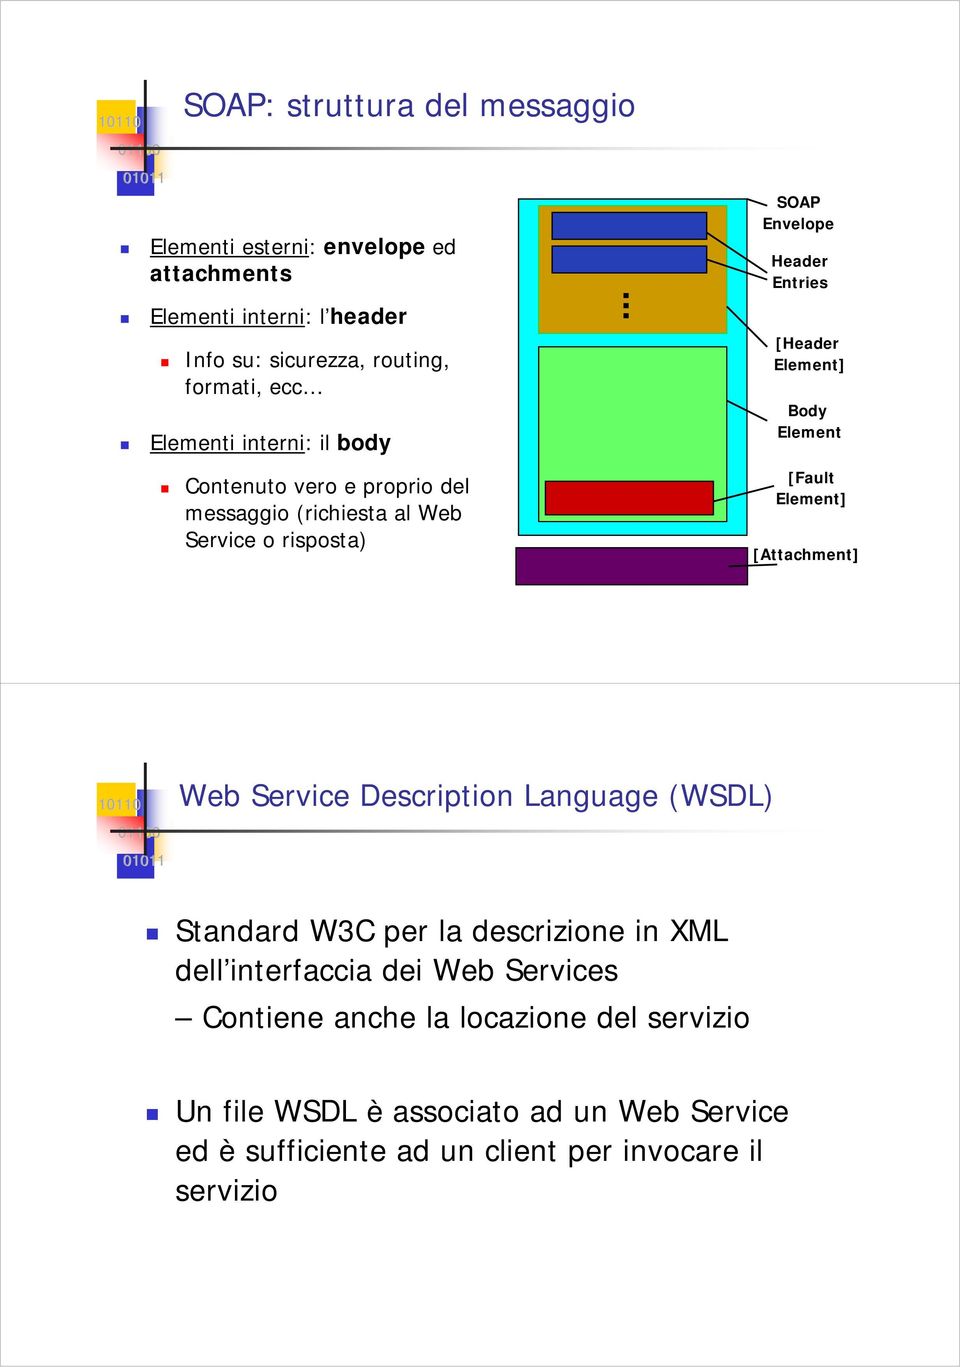 Element] Body Element [Fault Element] [Attachment] Web Service Description Language (WSDL) Standard W3C per la descrizione in XML dell